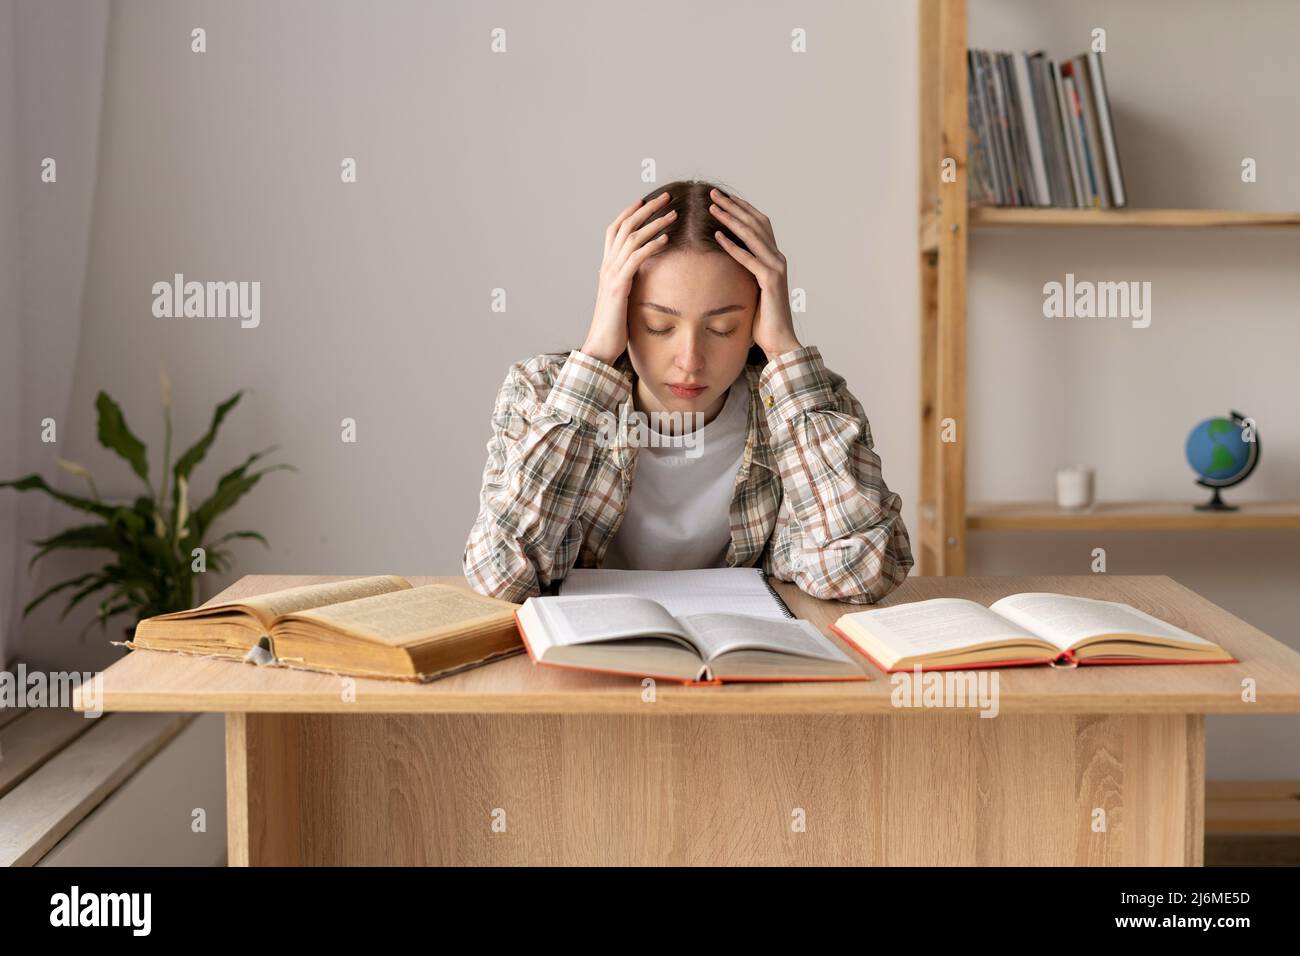 Müde, erschöpfte kaukasische Schülerin, die in einer Bibliothek saß und Bücher ihre Augen schloss, massierte ihren Kopf, Kopfschmerzen und Stress aus dem Studium Stockfoto